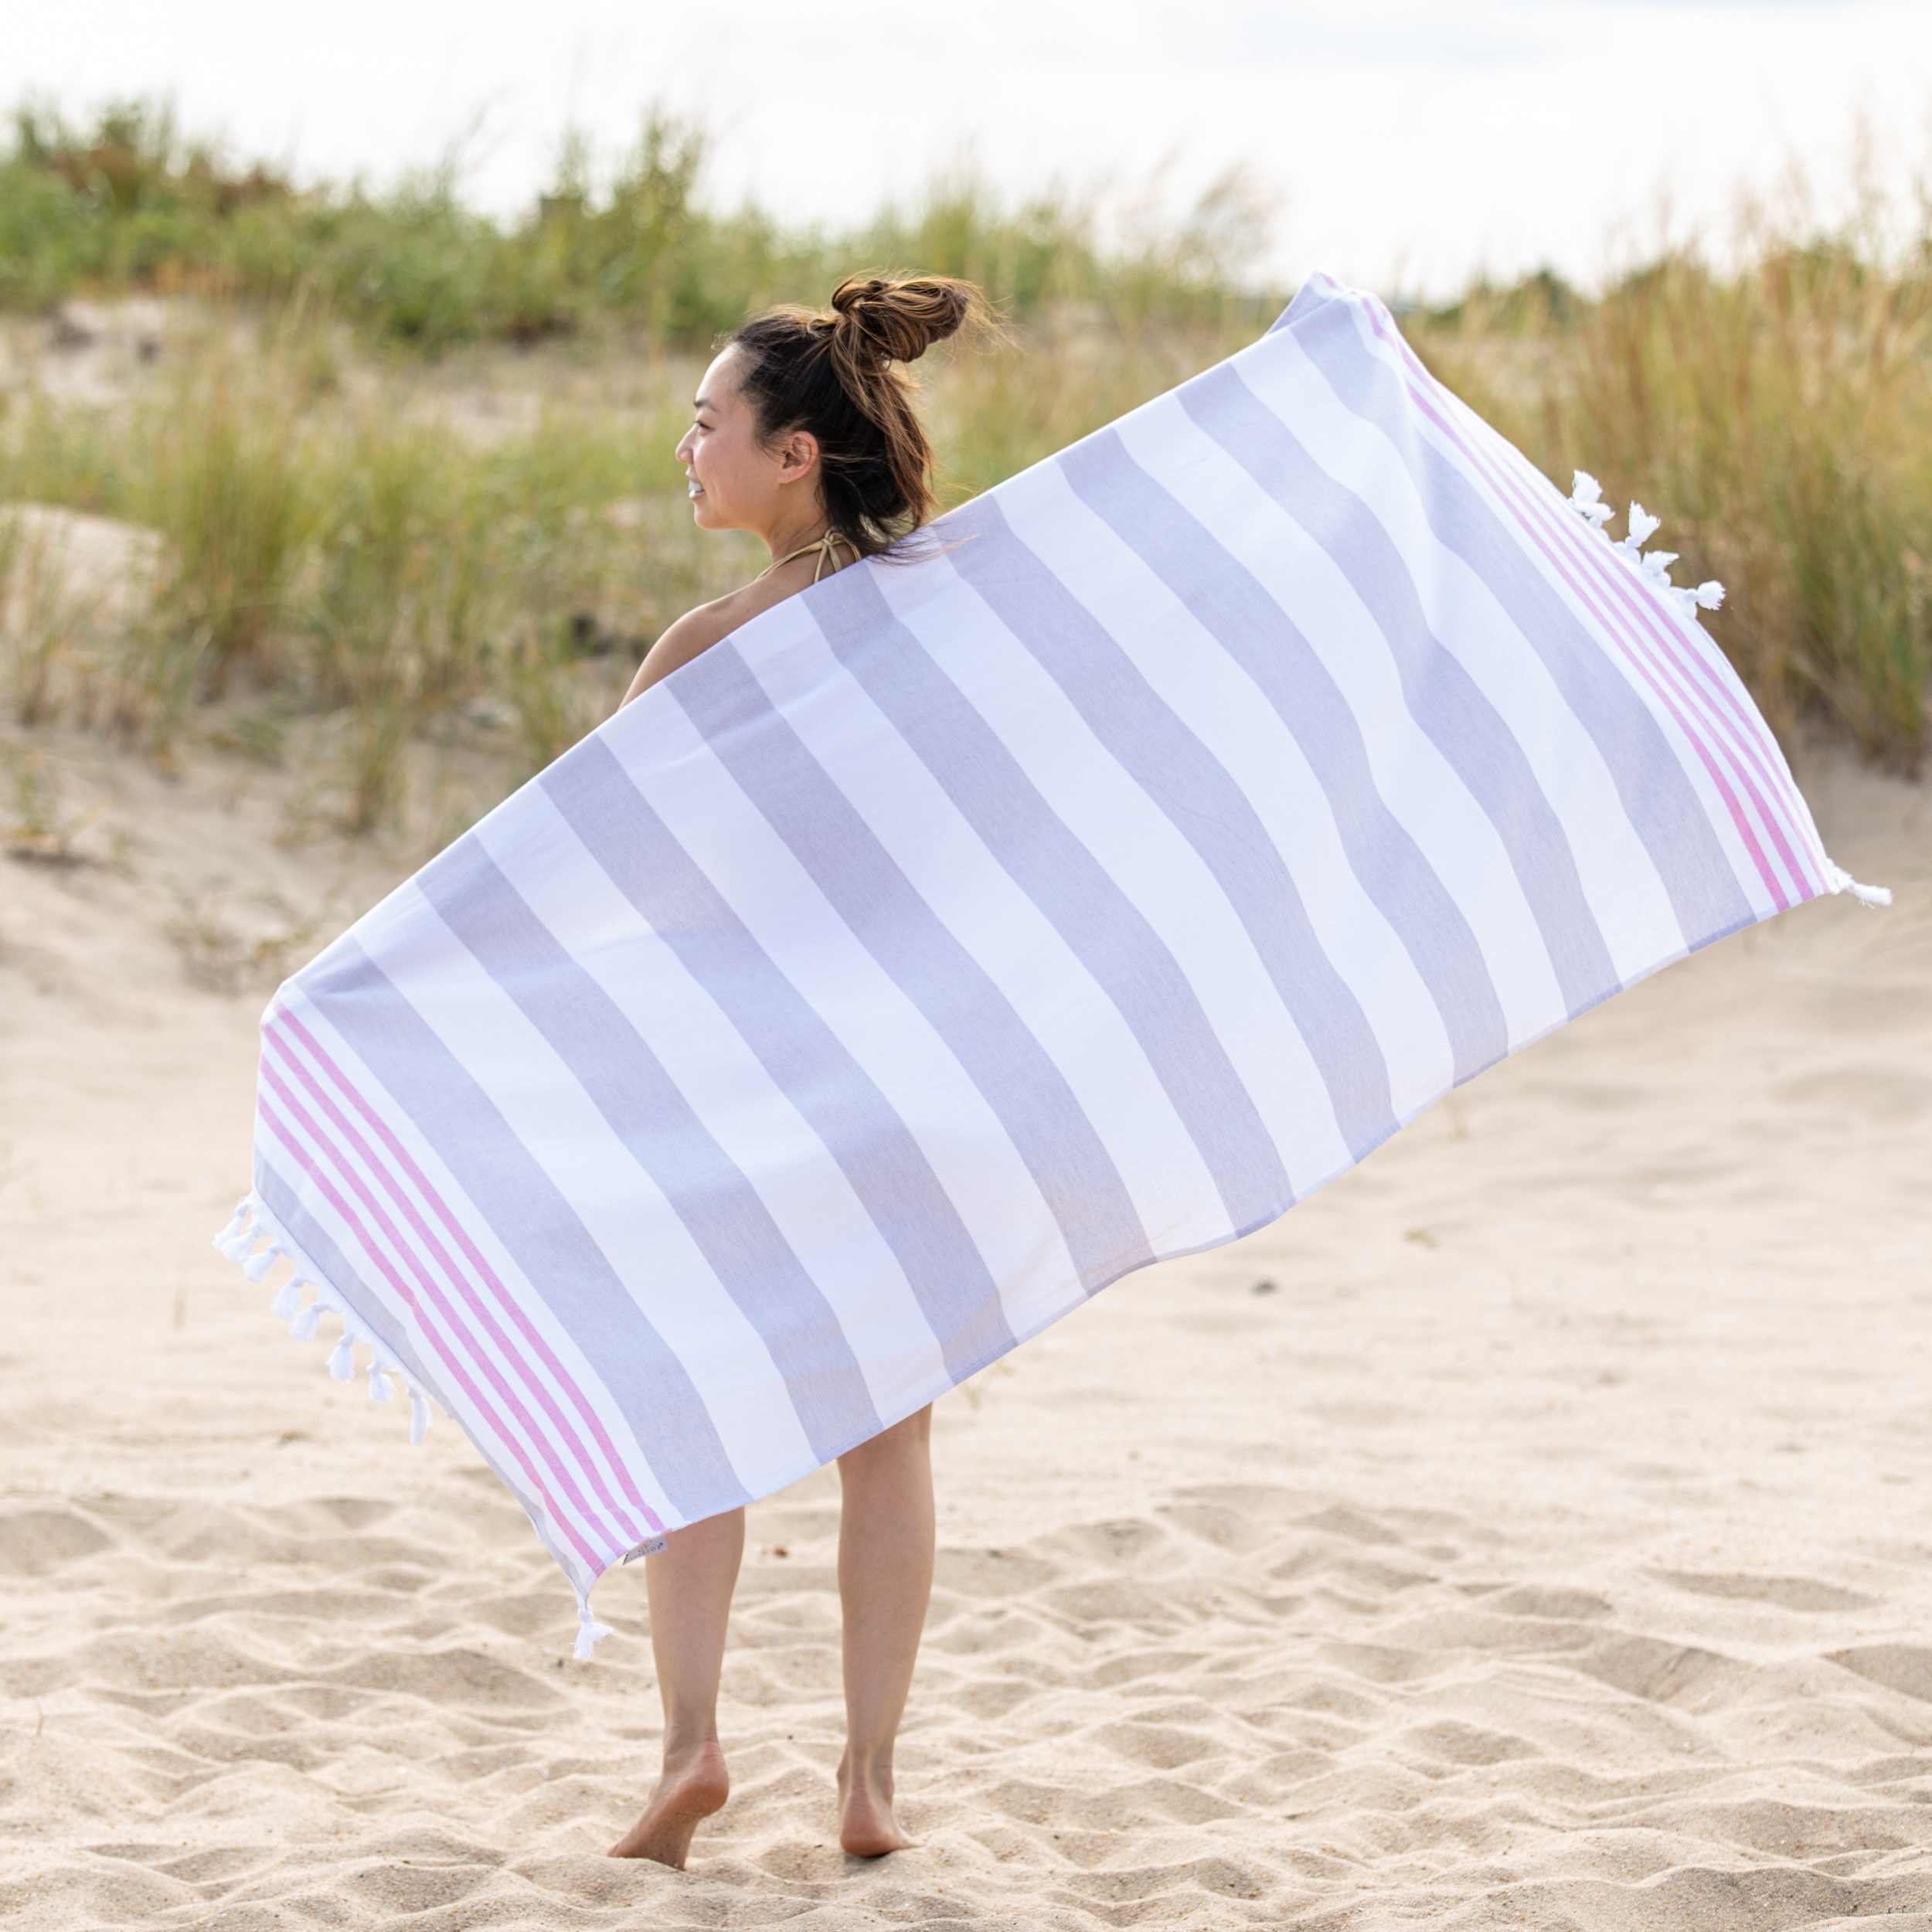 https://ak1.ostkcdn.com/images/products/is/images/direct/7926c88ba3b8b6aaa5456d4b65fff0fa42981da8/Miranda-Haus-Bahari-Stripe-Fouta-Beach-Towel-with-Tassels.jpg